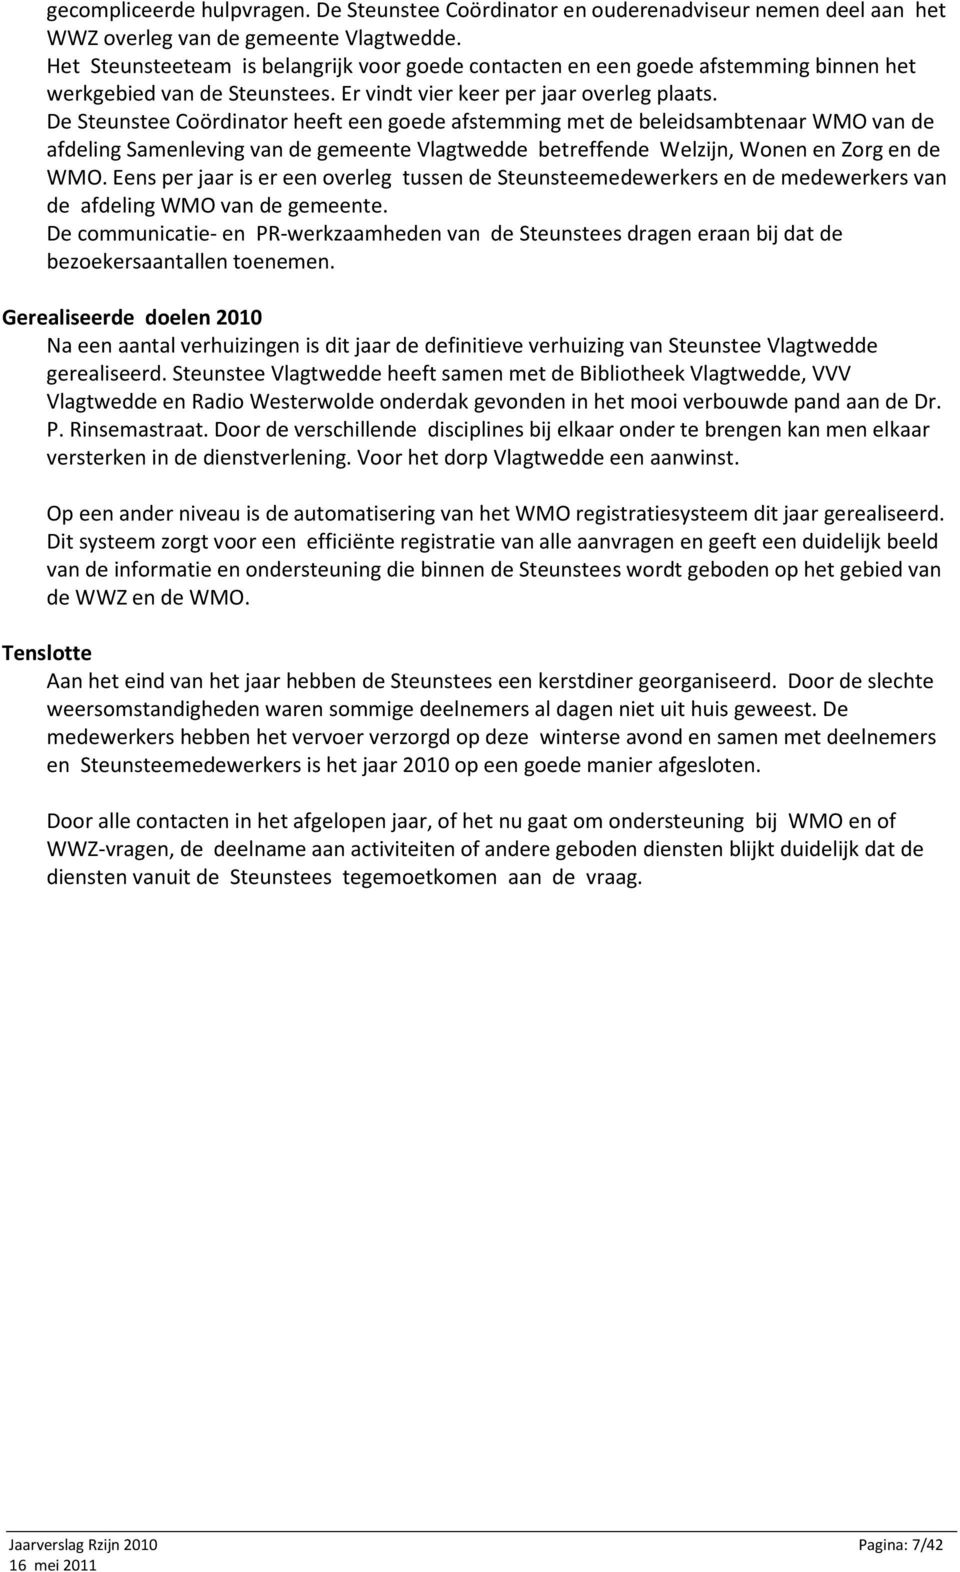 De Steunstee Coördinator heeft een goede afstemming met de beleidsambtenaar WMO van de afdeling Samenleving van de gemeente Vlagtwedde betreffende Welzijn, Wonen en Zorg en de WMO.